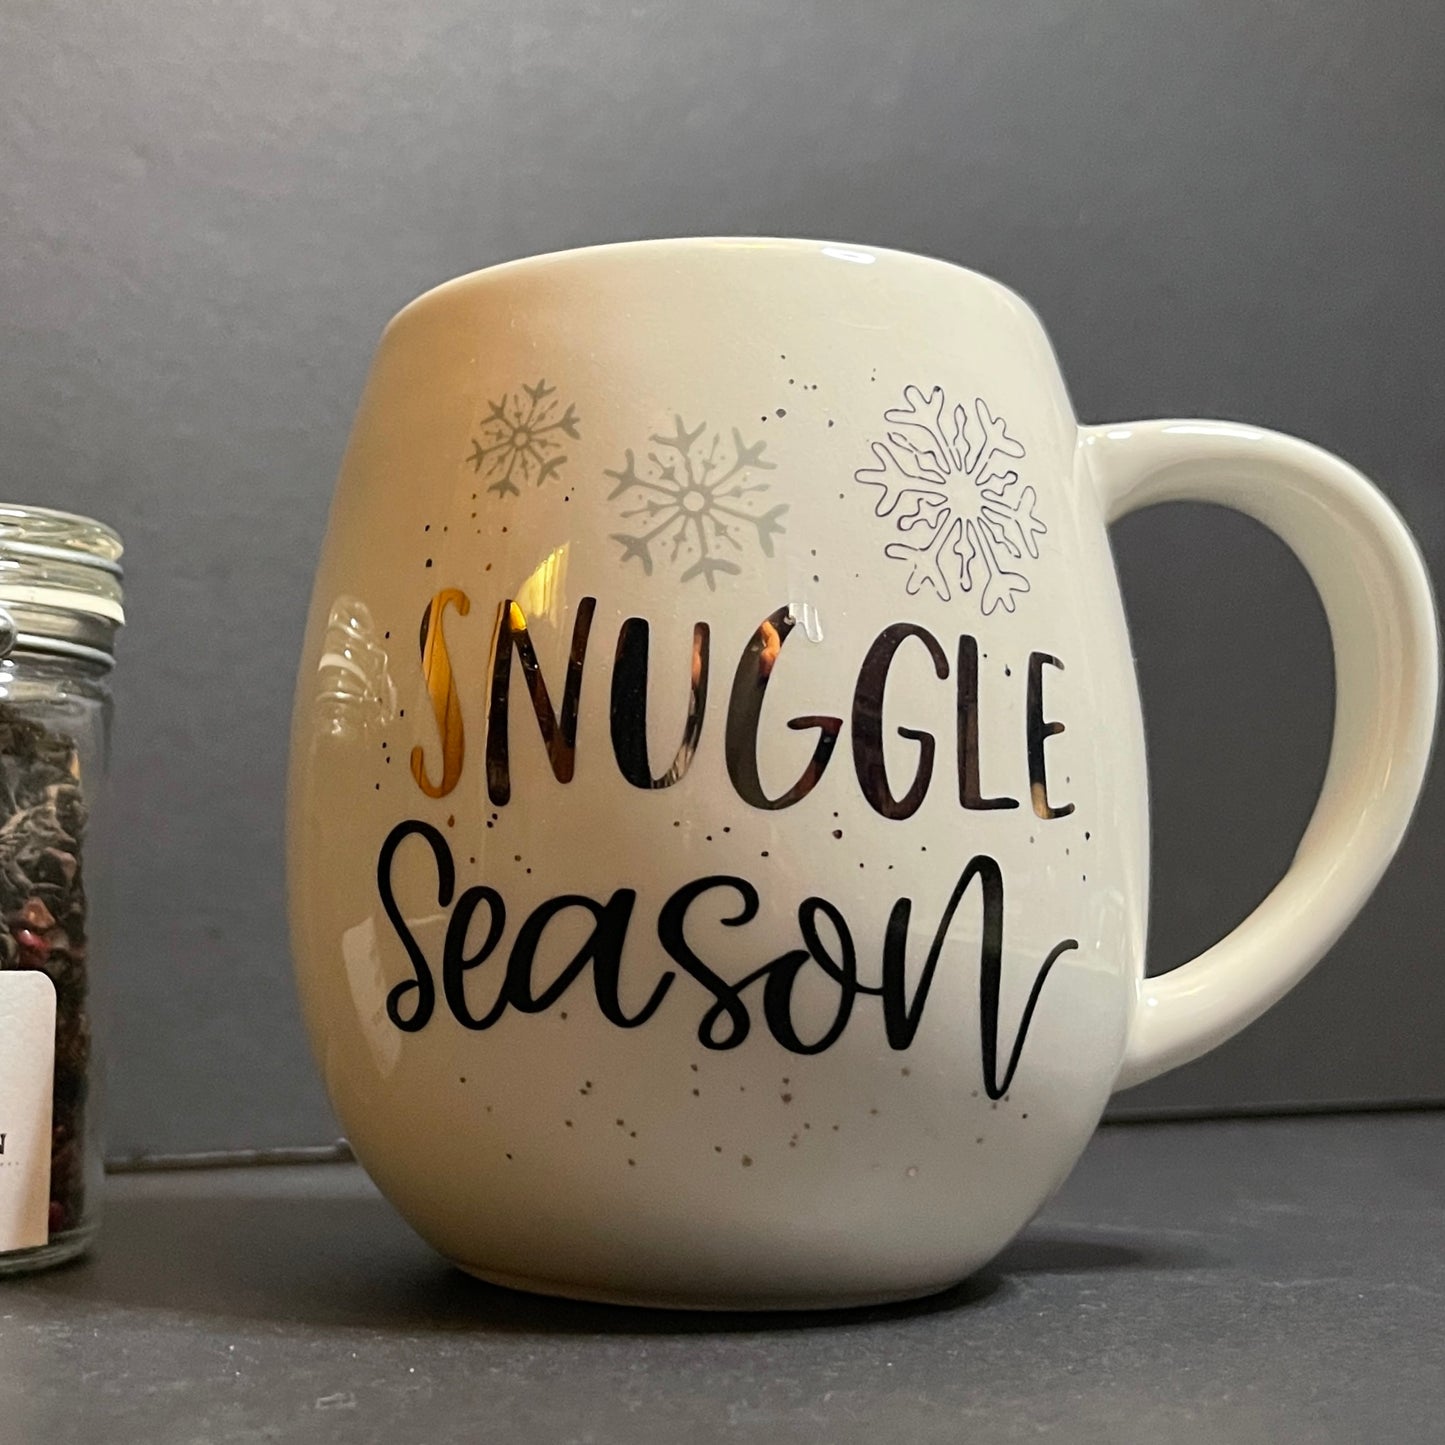 Snuggle Season Teacup